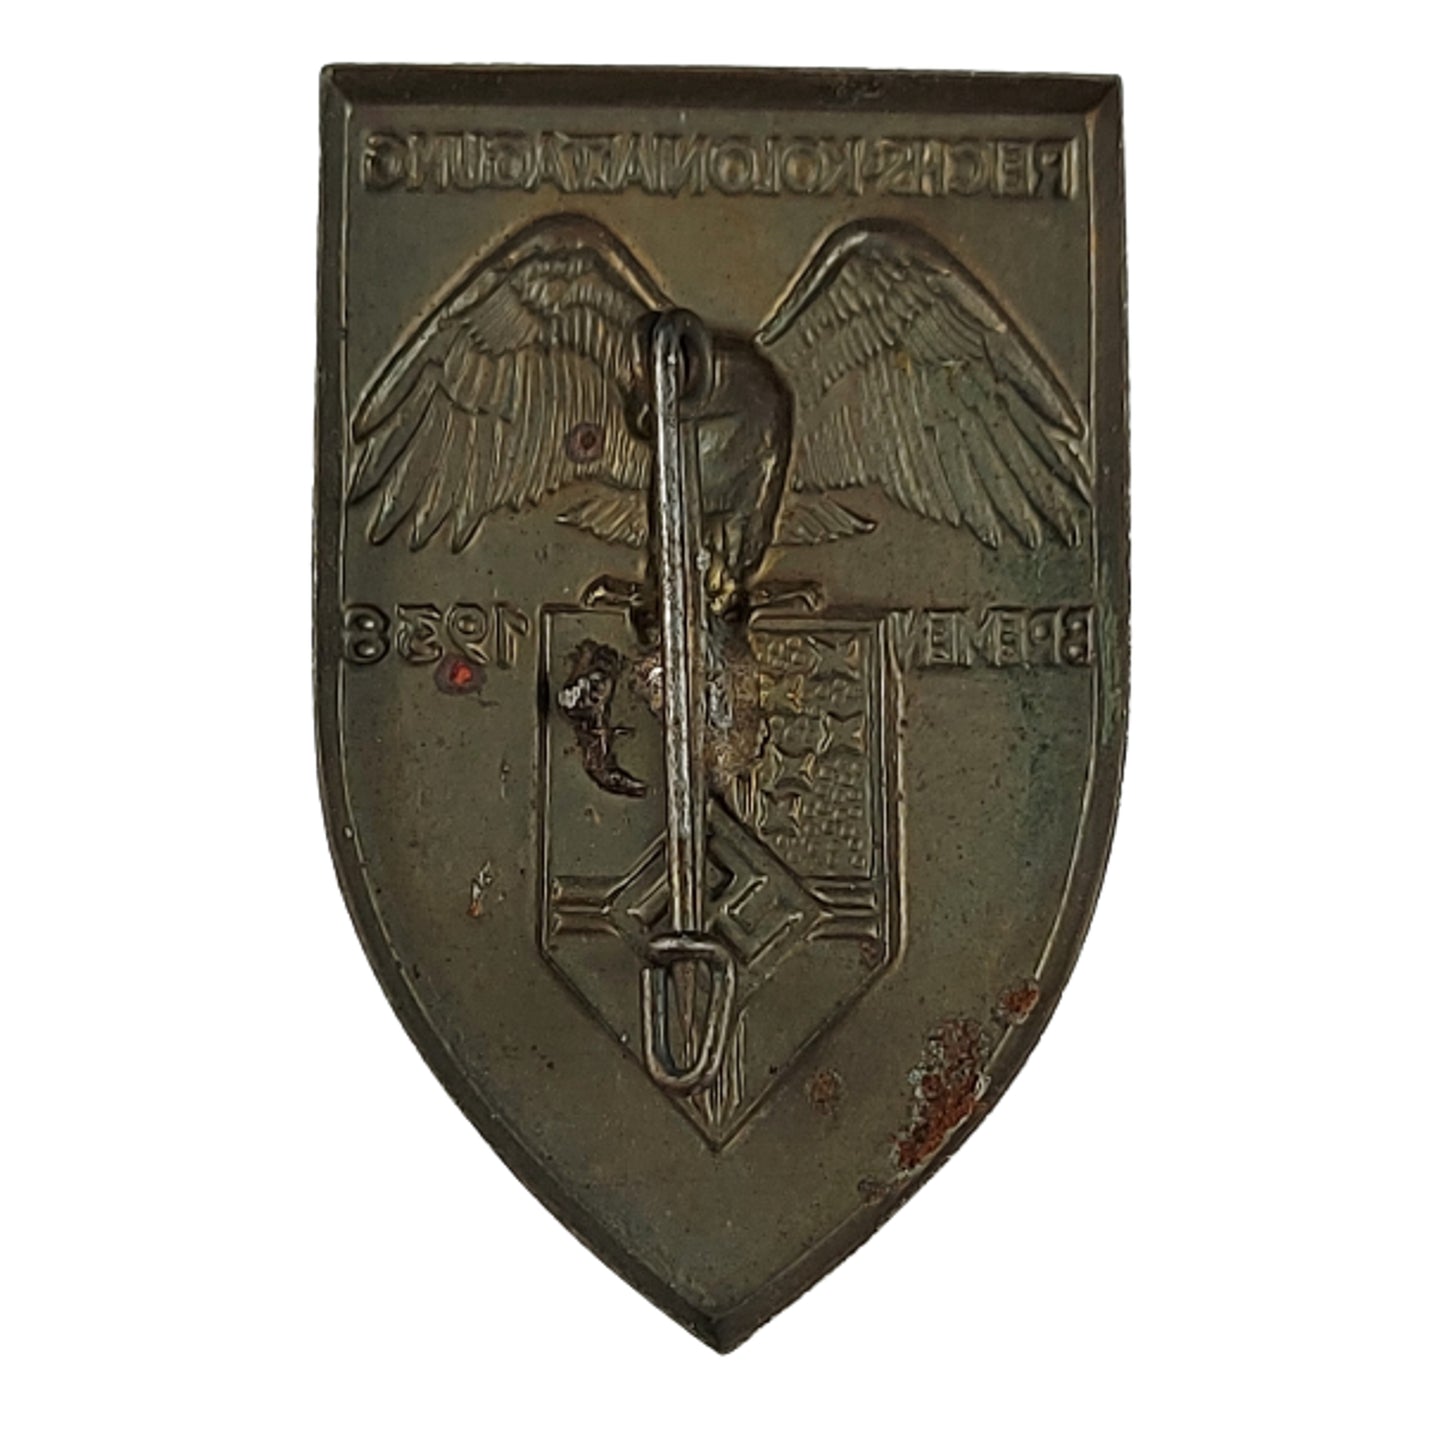 1938 German Reichs Kolonialtagund Badge